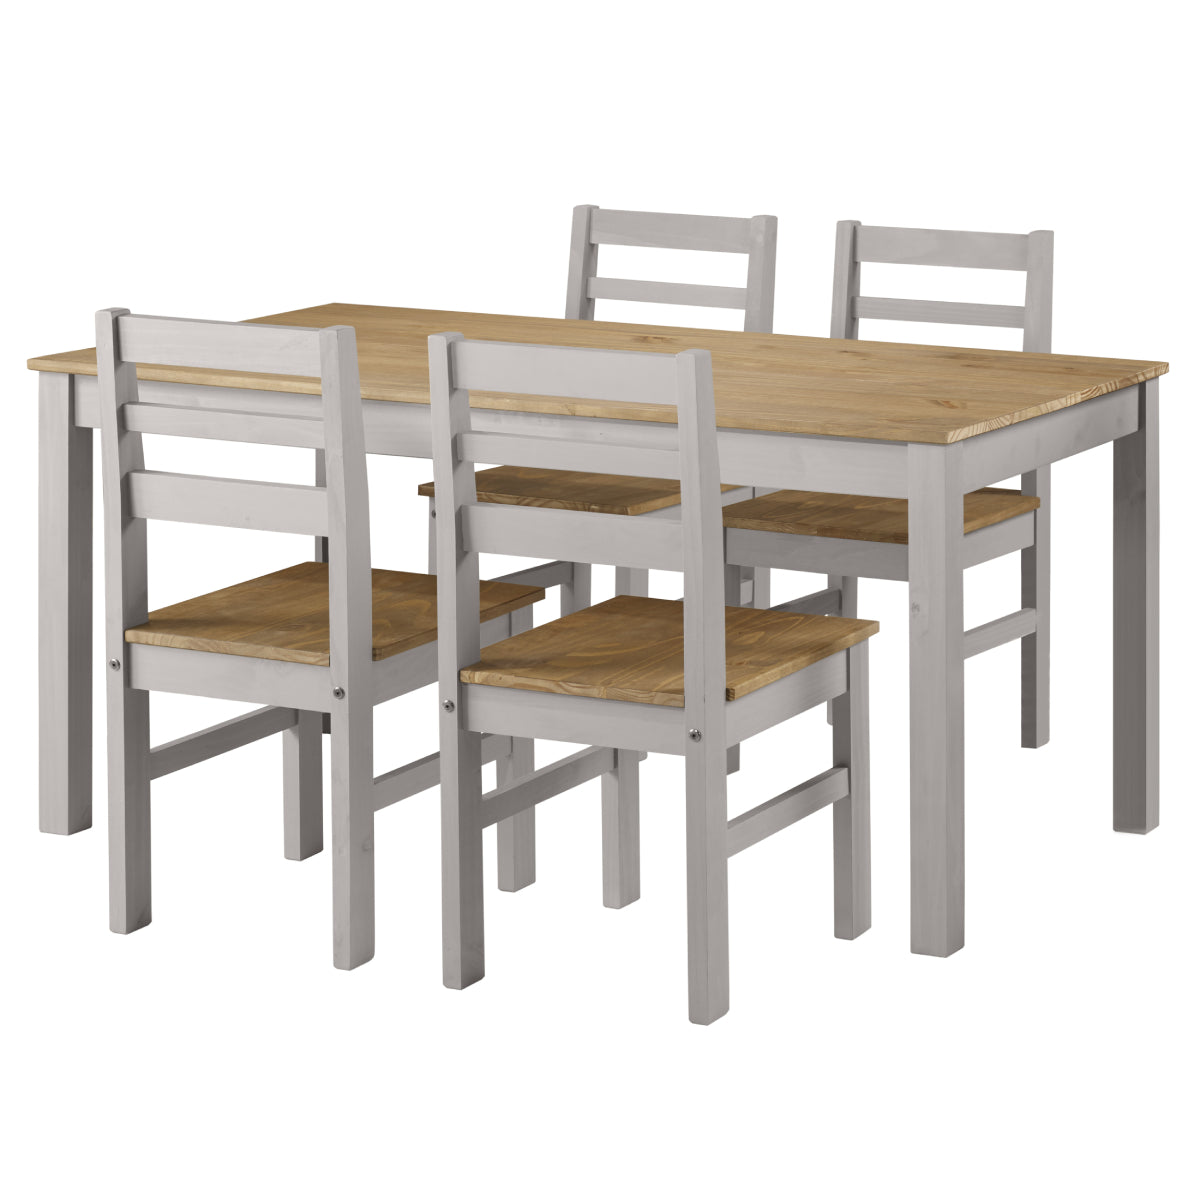 Wood Dining Table Corona Gray | Furniture Dash